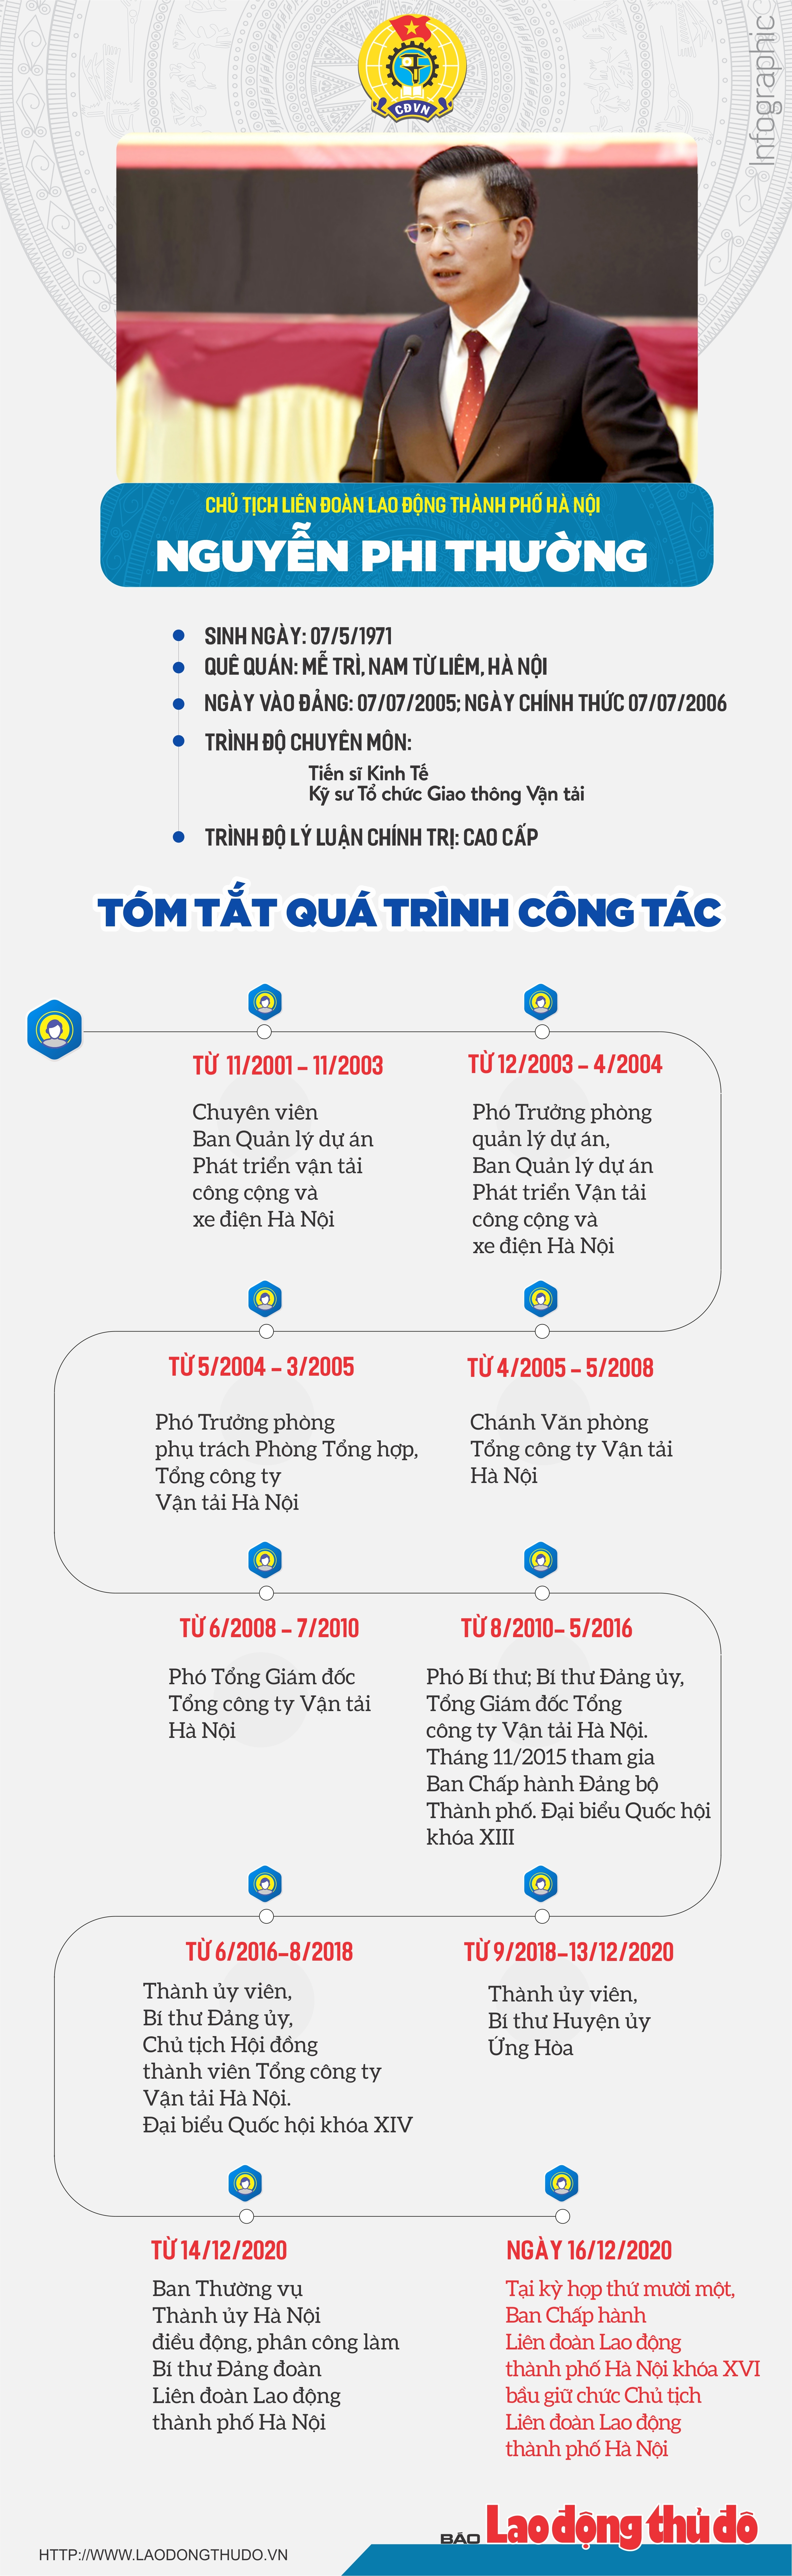 Infographic: Tóm tắt quá trình công tác của tân Chủ tịch Liên đoàn Lao động thành phố Hà Nội Nguyễn Phi Thường